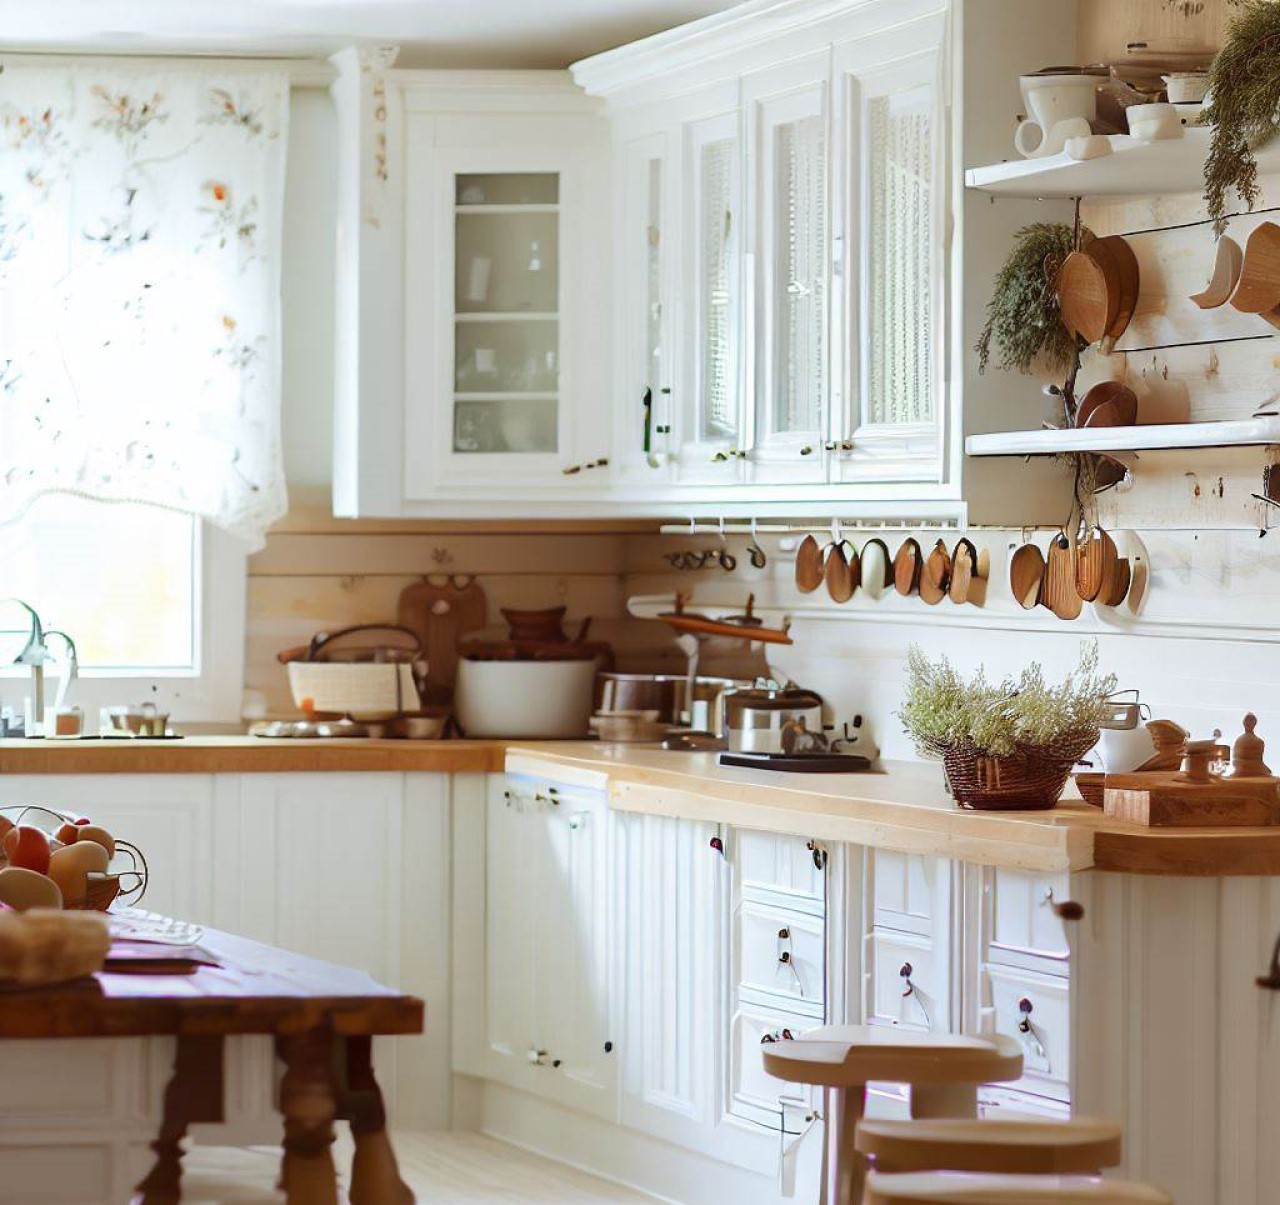 Interior de cocina de estilo rústico con gabinetes modernos blancos